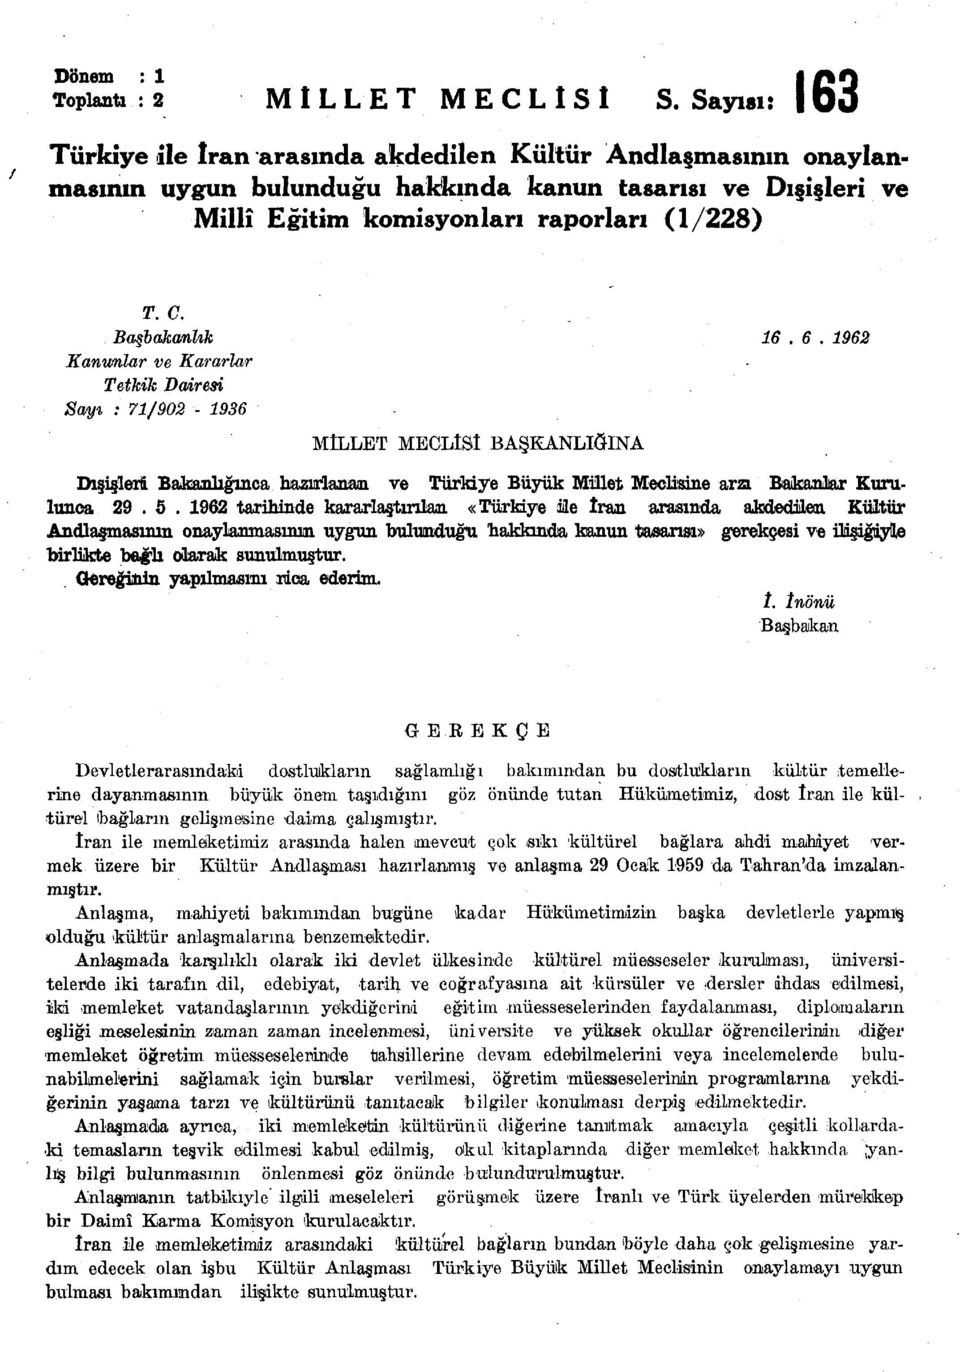 Başbakanlık Kanımlar ve Kararlar Tetkik Dairesi Sayı : 71/902-1936 MİLLET MECLİSİ BAŞKANLIĞINA 16. 6.